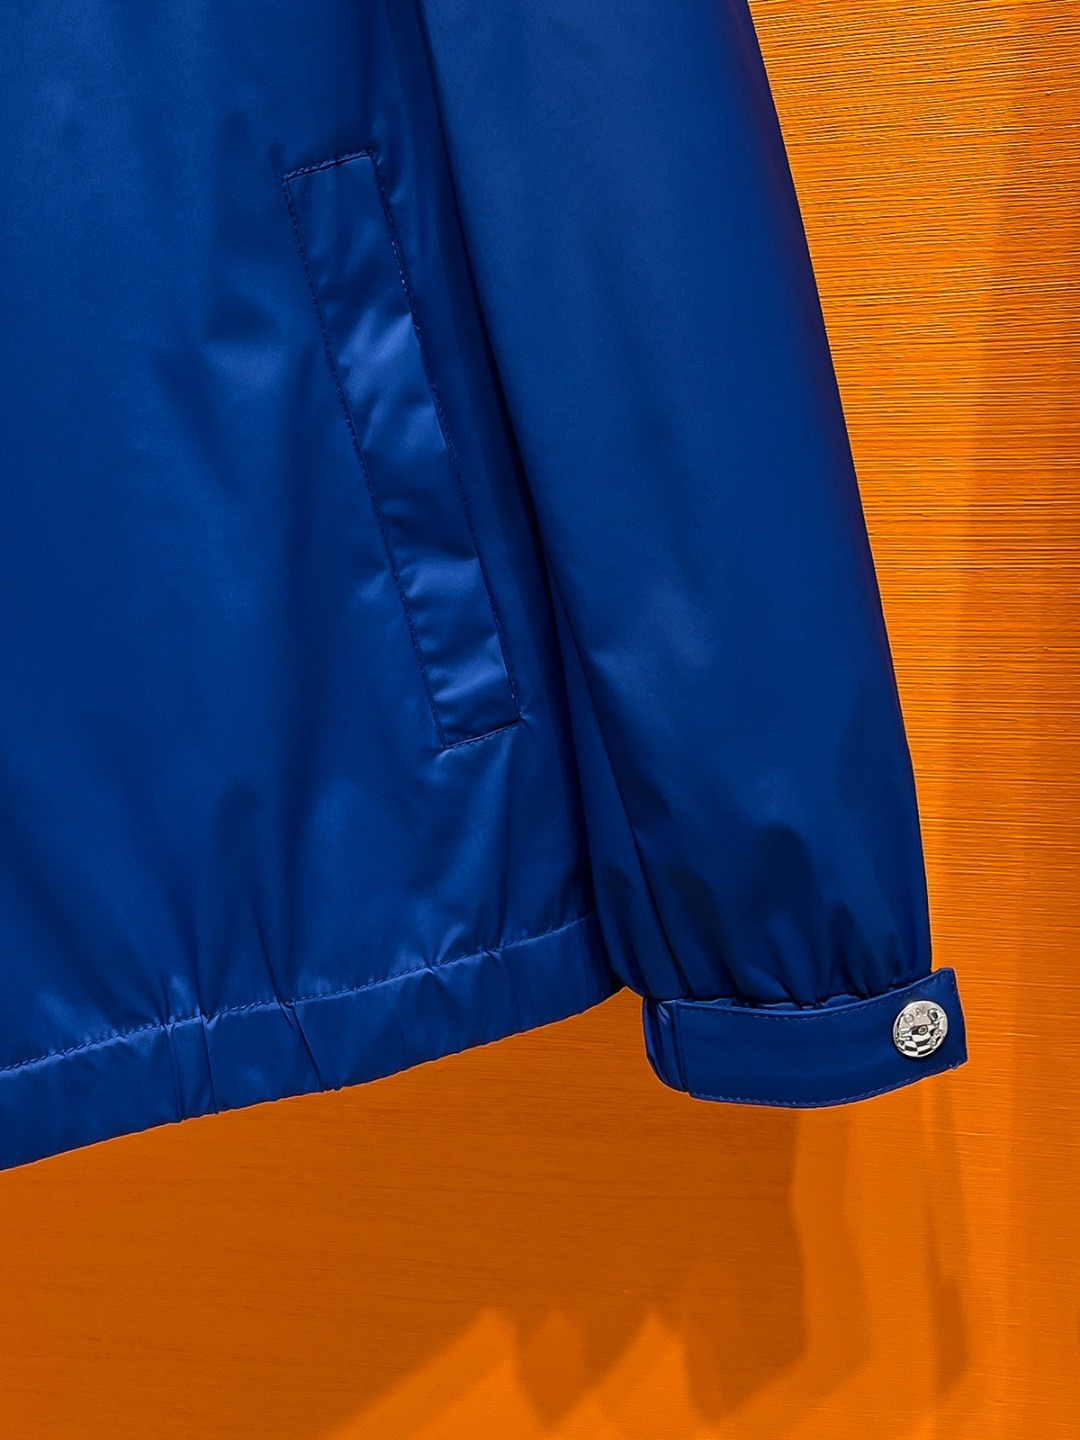 MO#24ss风衣系男装高端梭织外套高端精品系列男女同款贸易公司渠道订单官网专柜在售系列业内独家首发经典